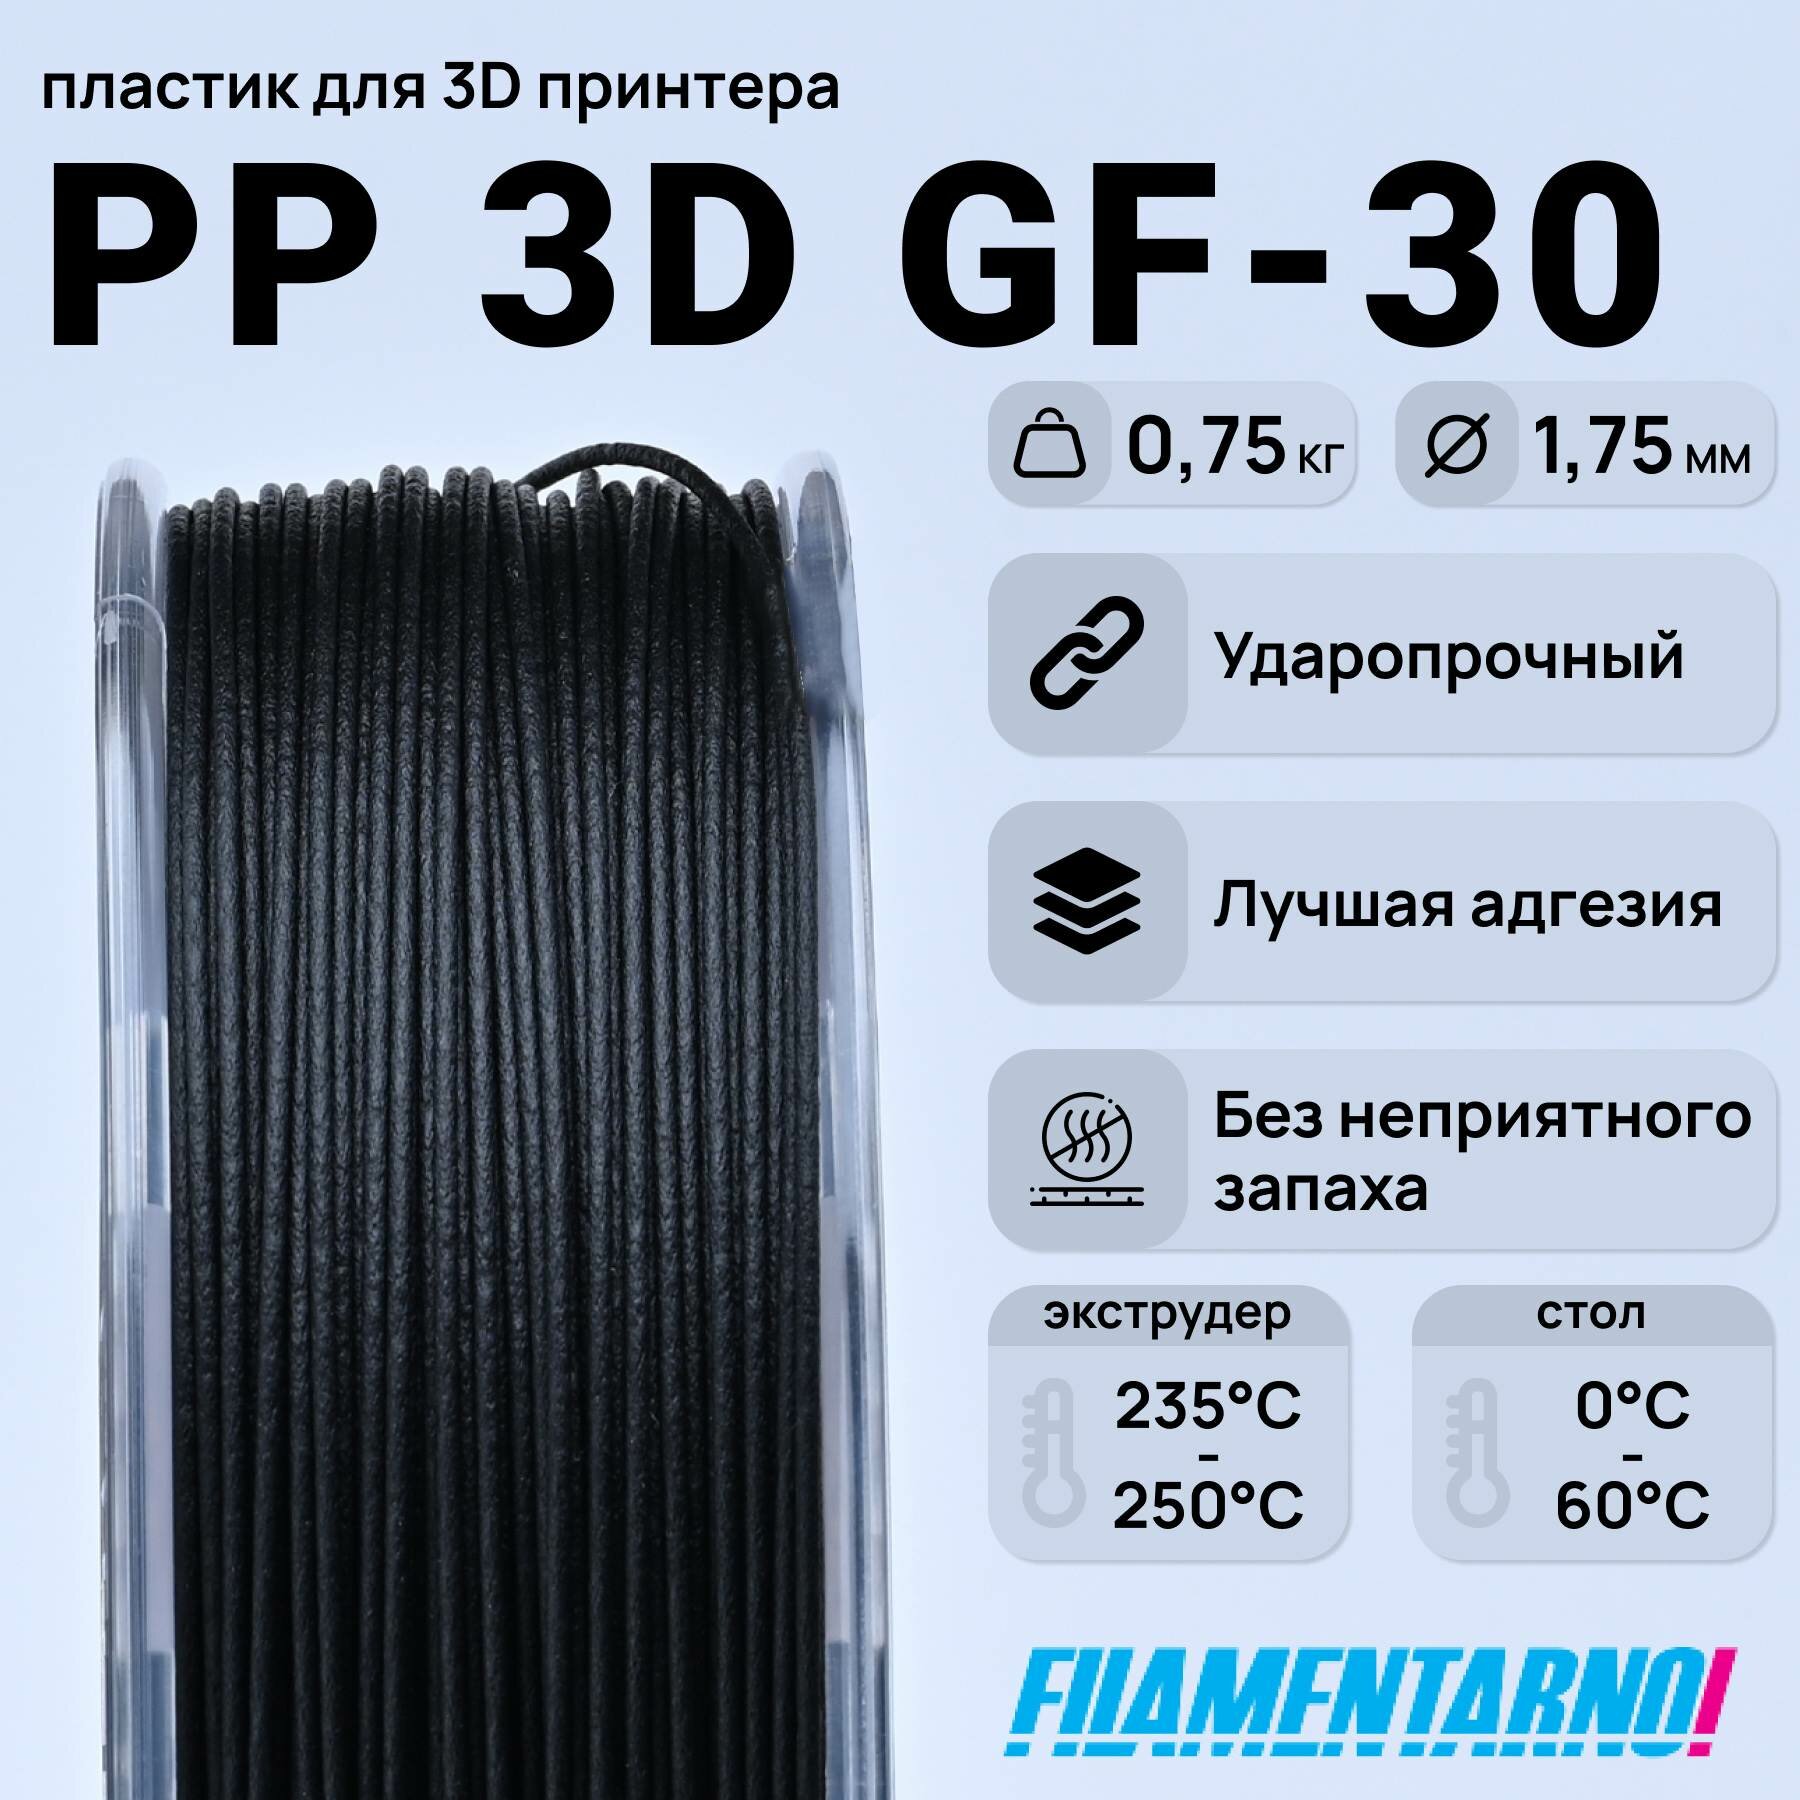 PP 3D Gf-30 черный 750 г, 1,75 мм, пластик Filamentarno для 3D-принтера